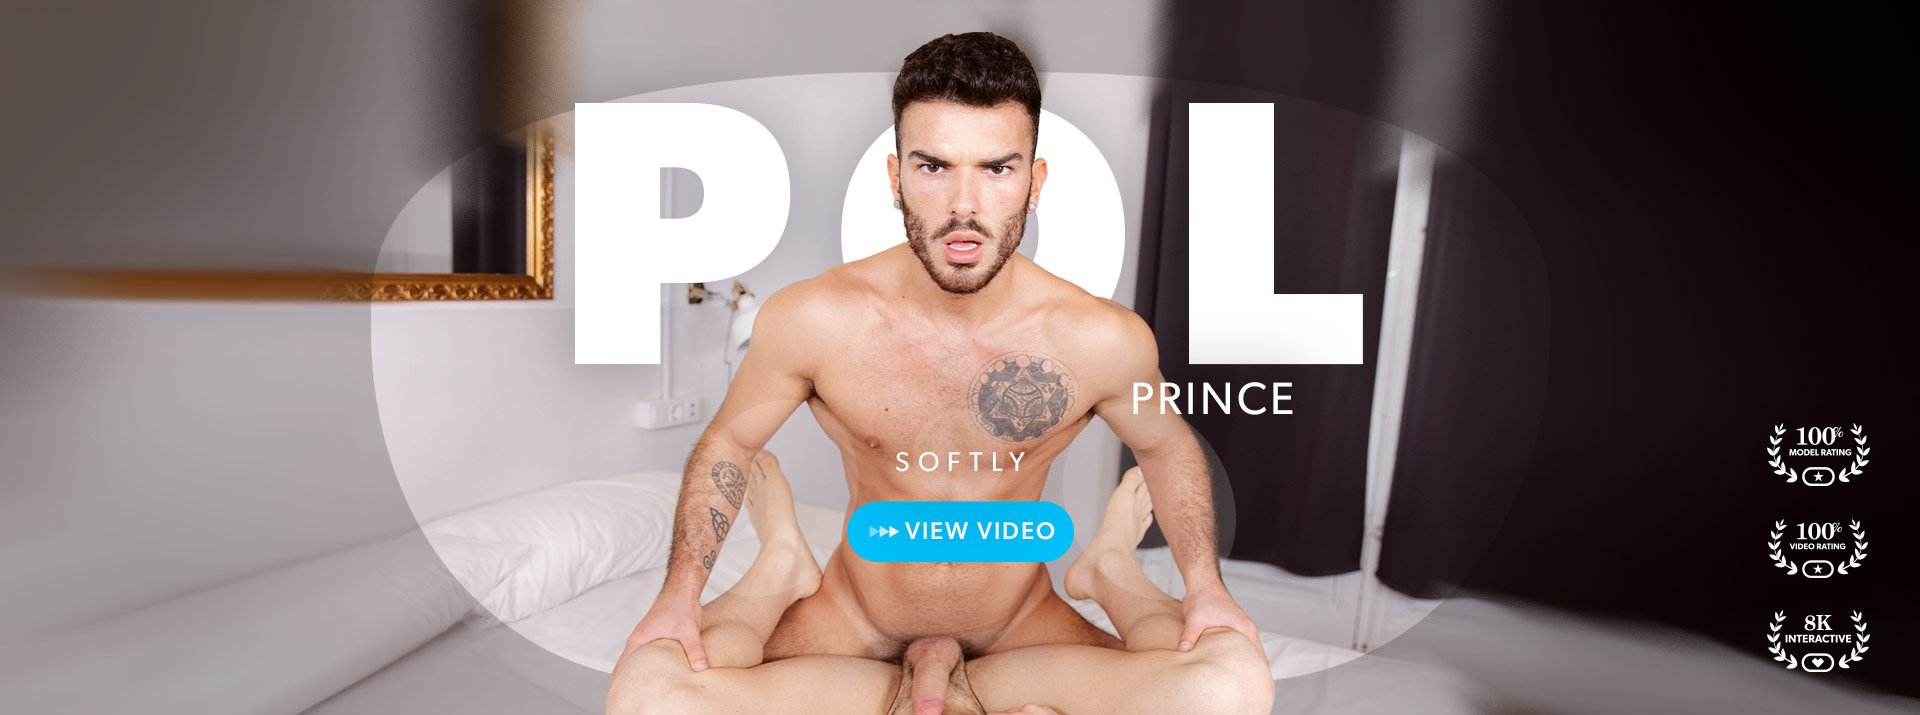 Pol Prince - VR GAY Porn video